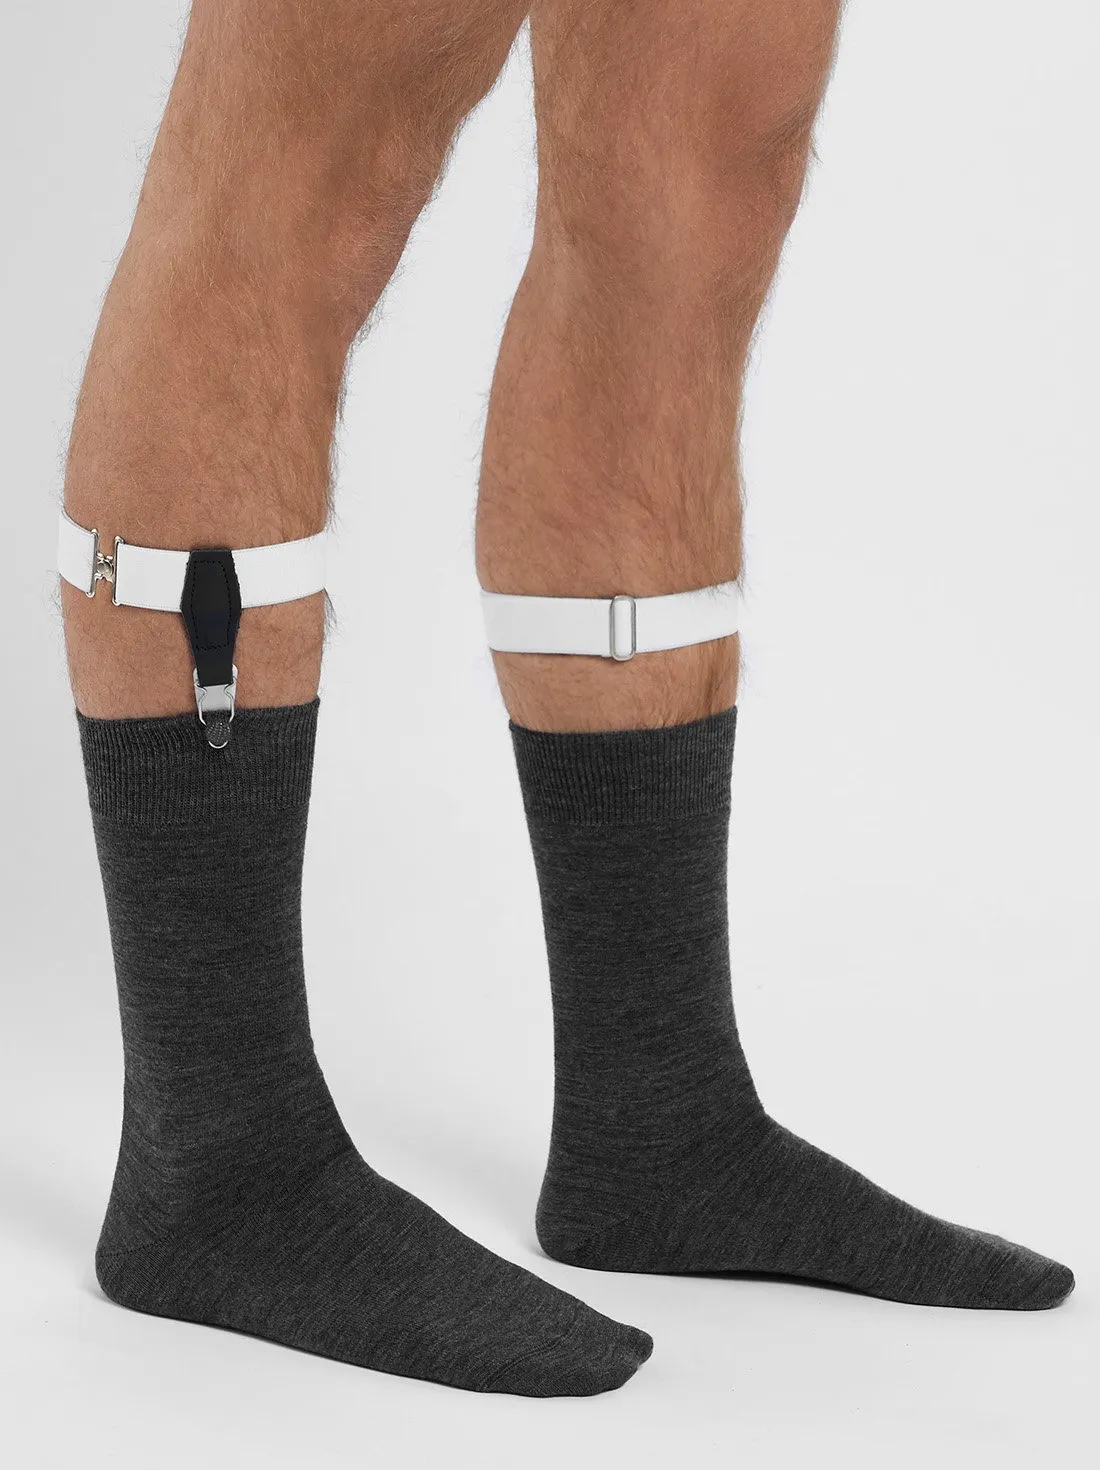 White Sock Garters